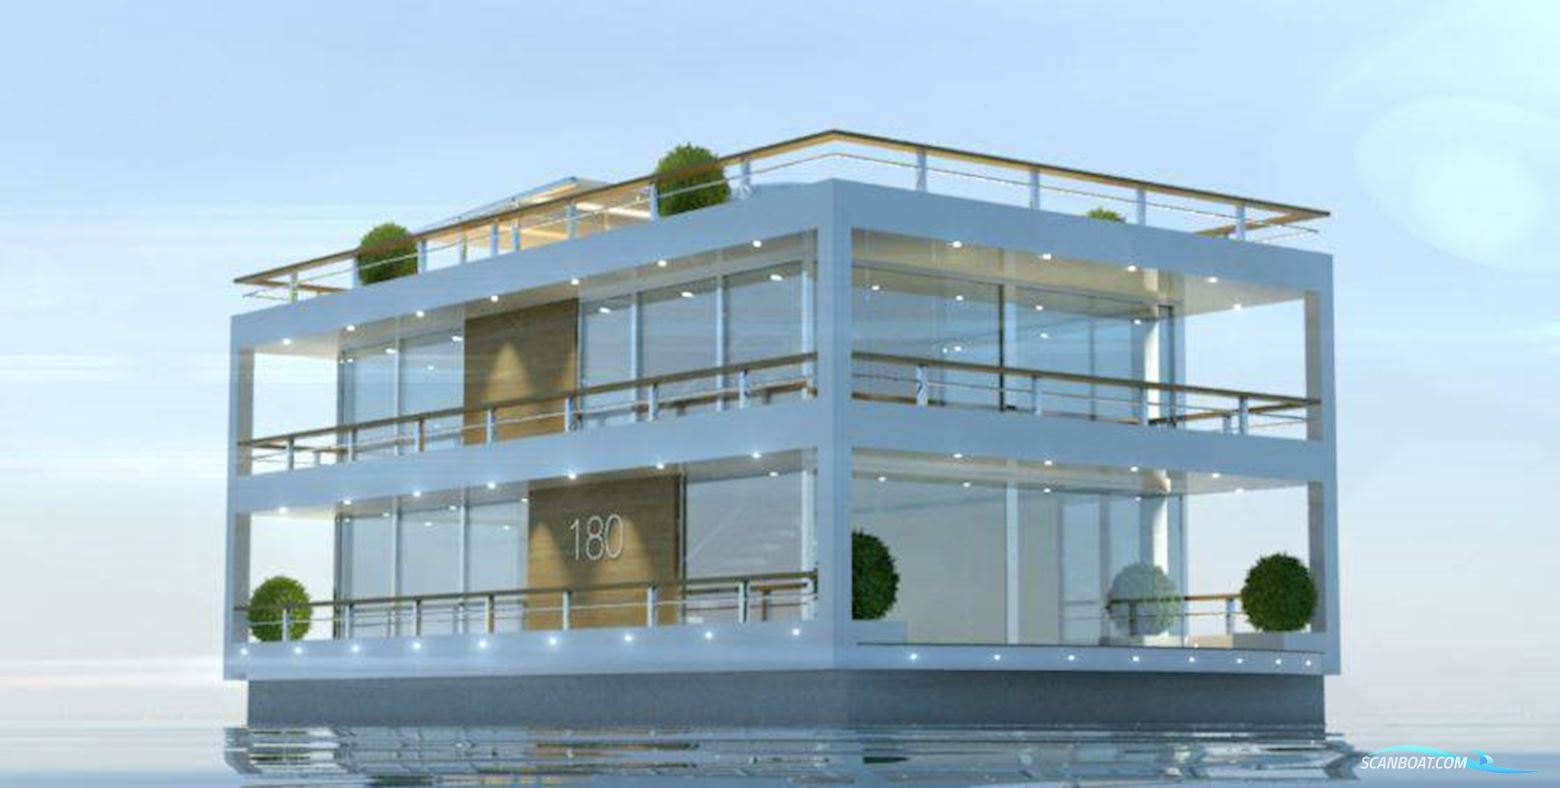 Houseboat The Yacht House 180 Huizen aan water 2024, met Onbekend motor, Norway